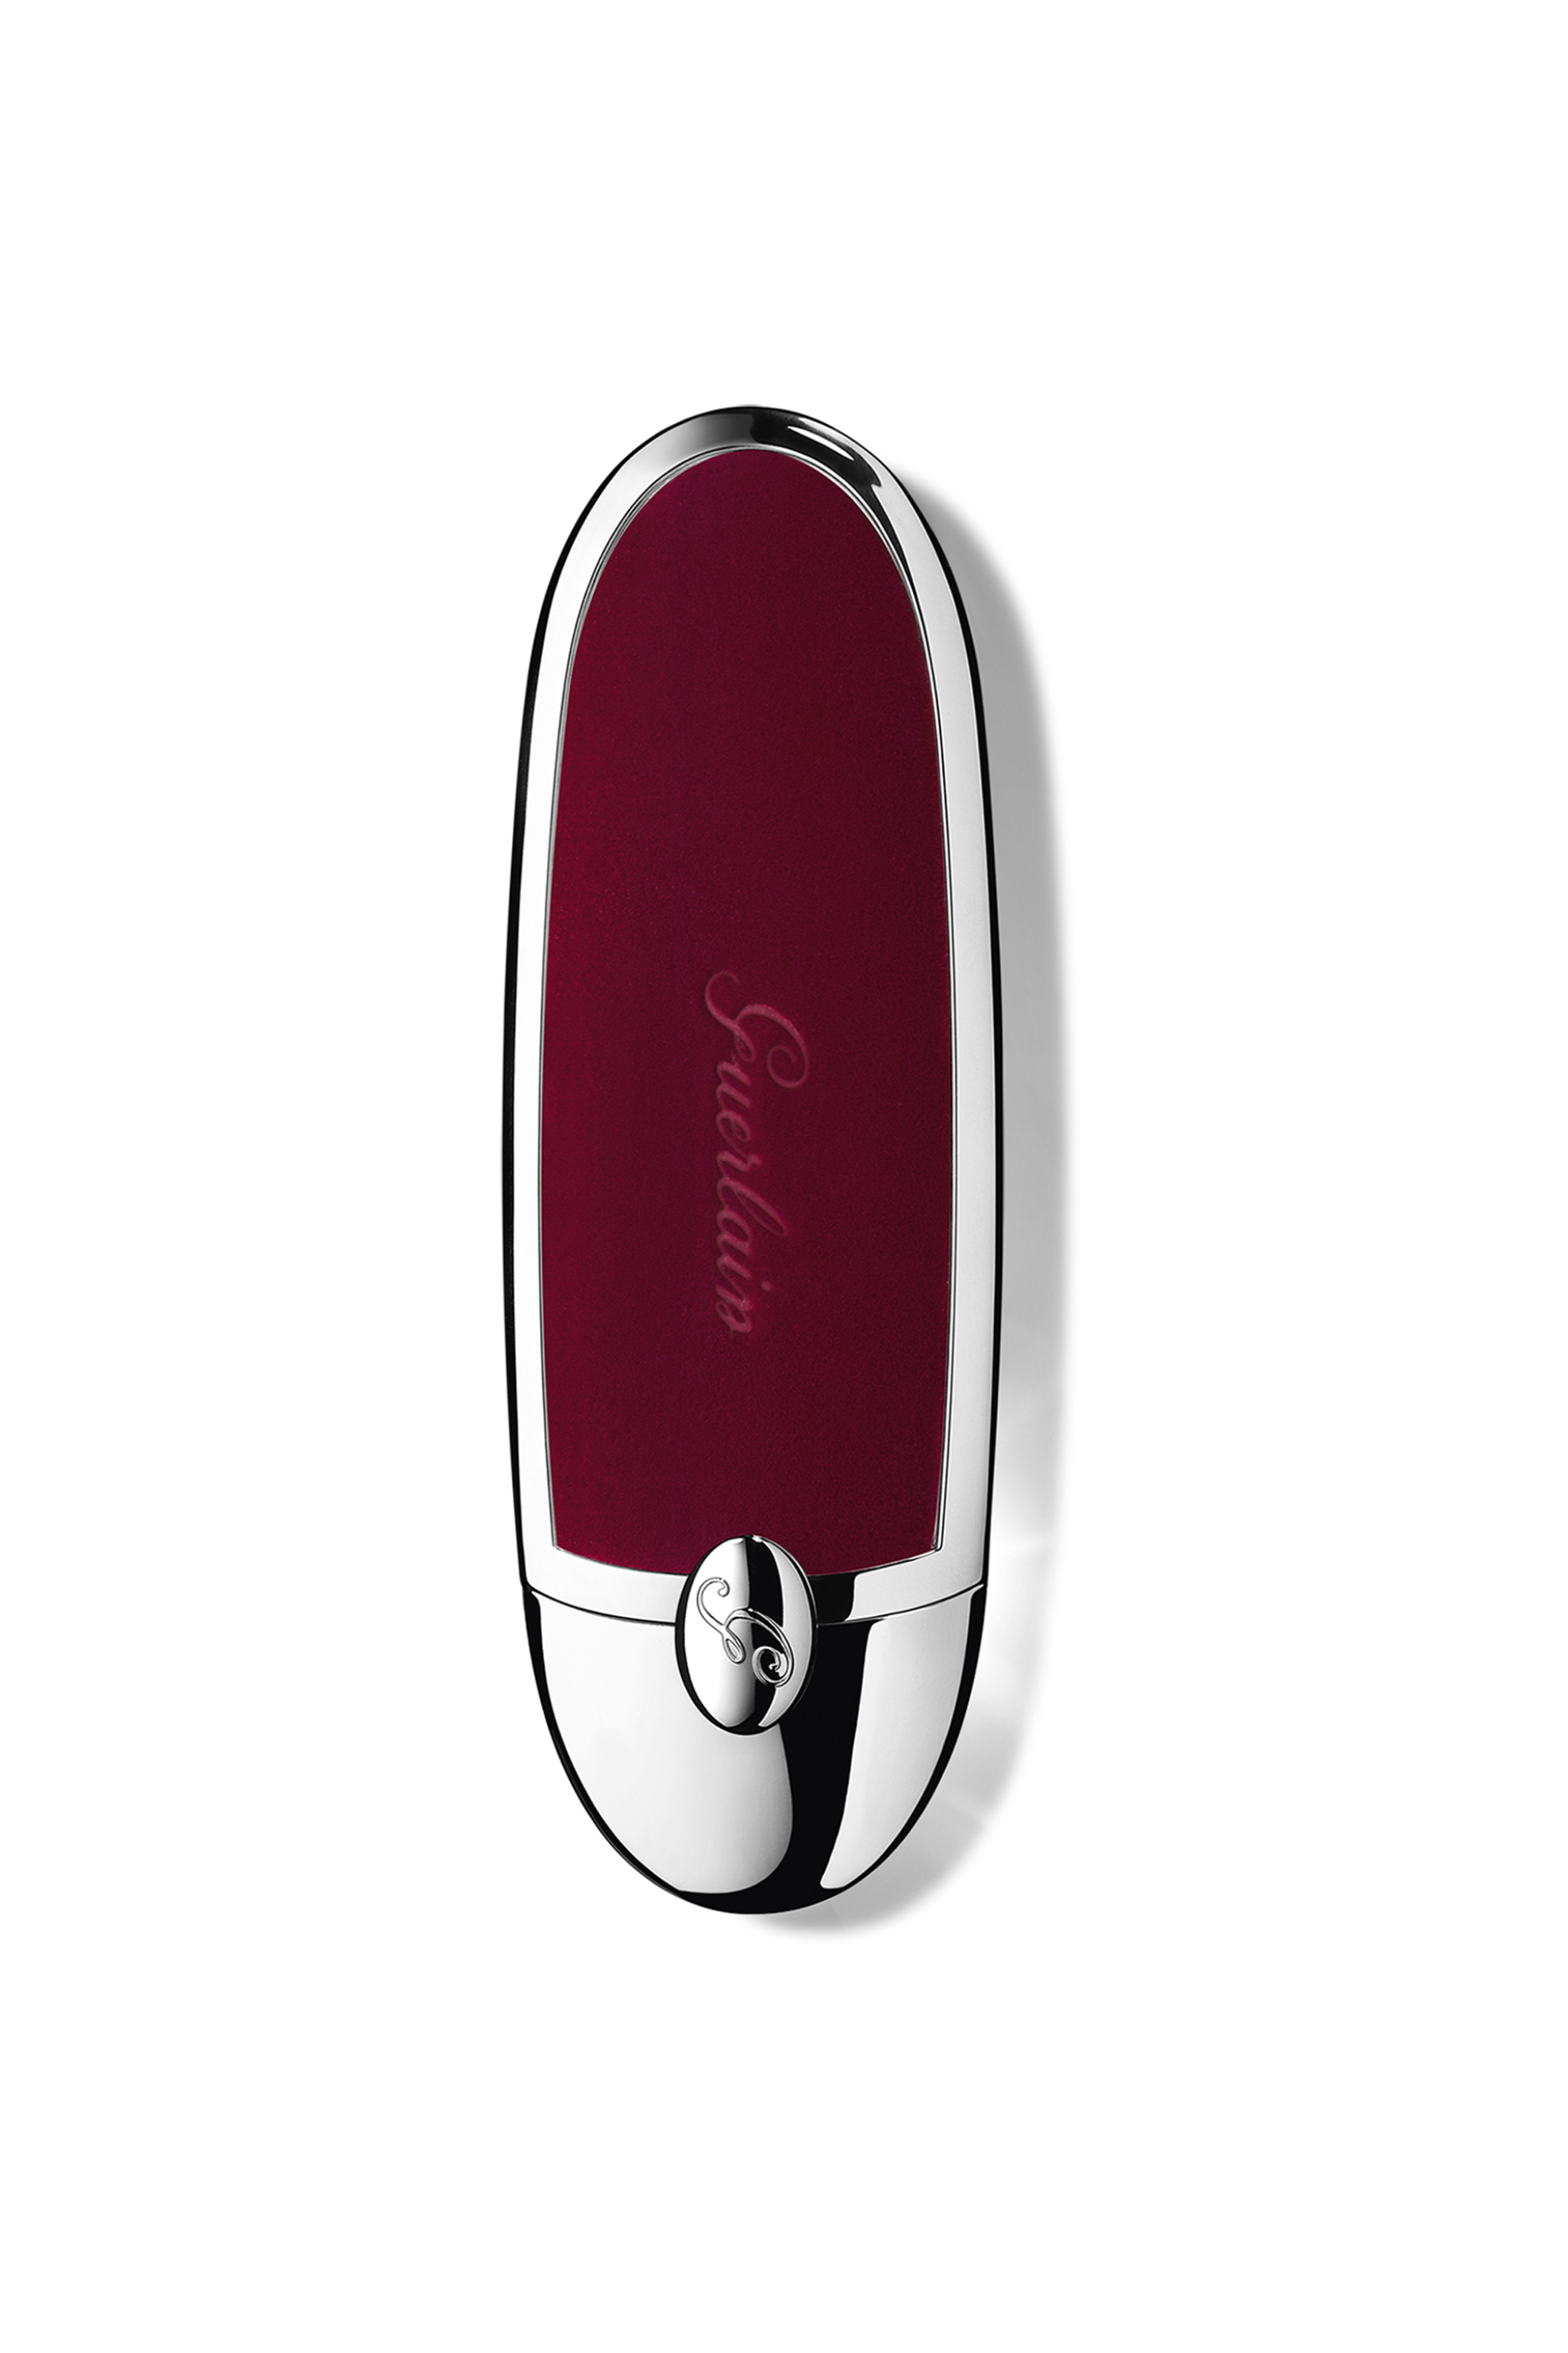 Guerlain Rouge G Lips Case - G043638 Luxurious Garnet